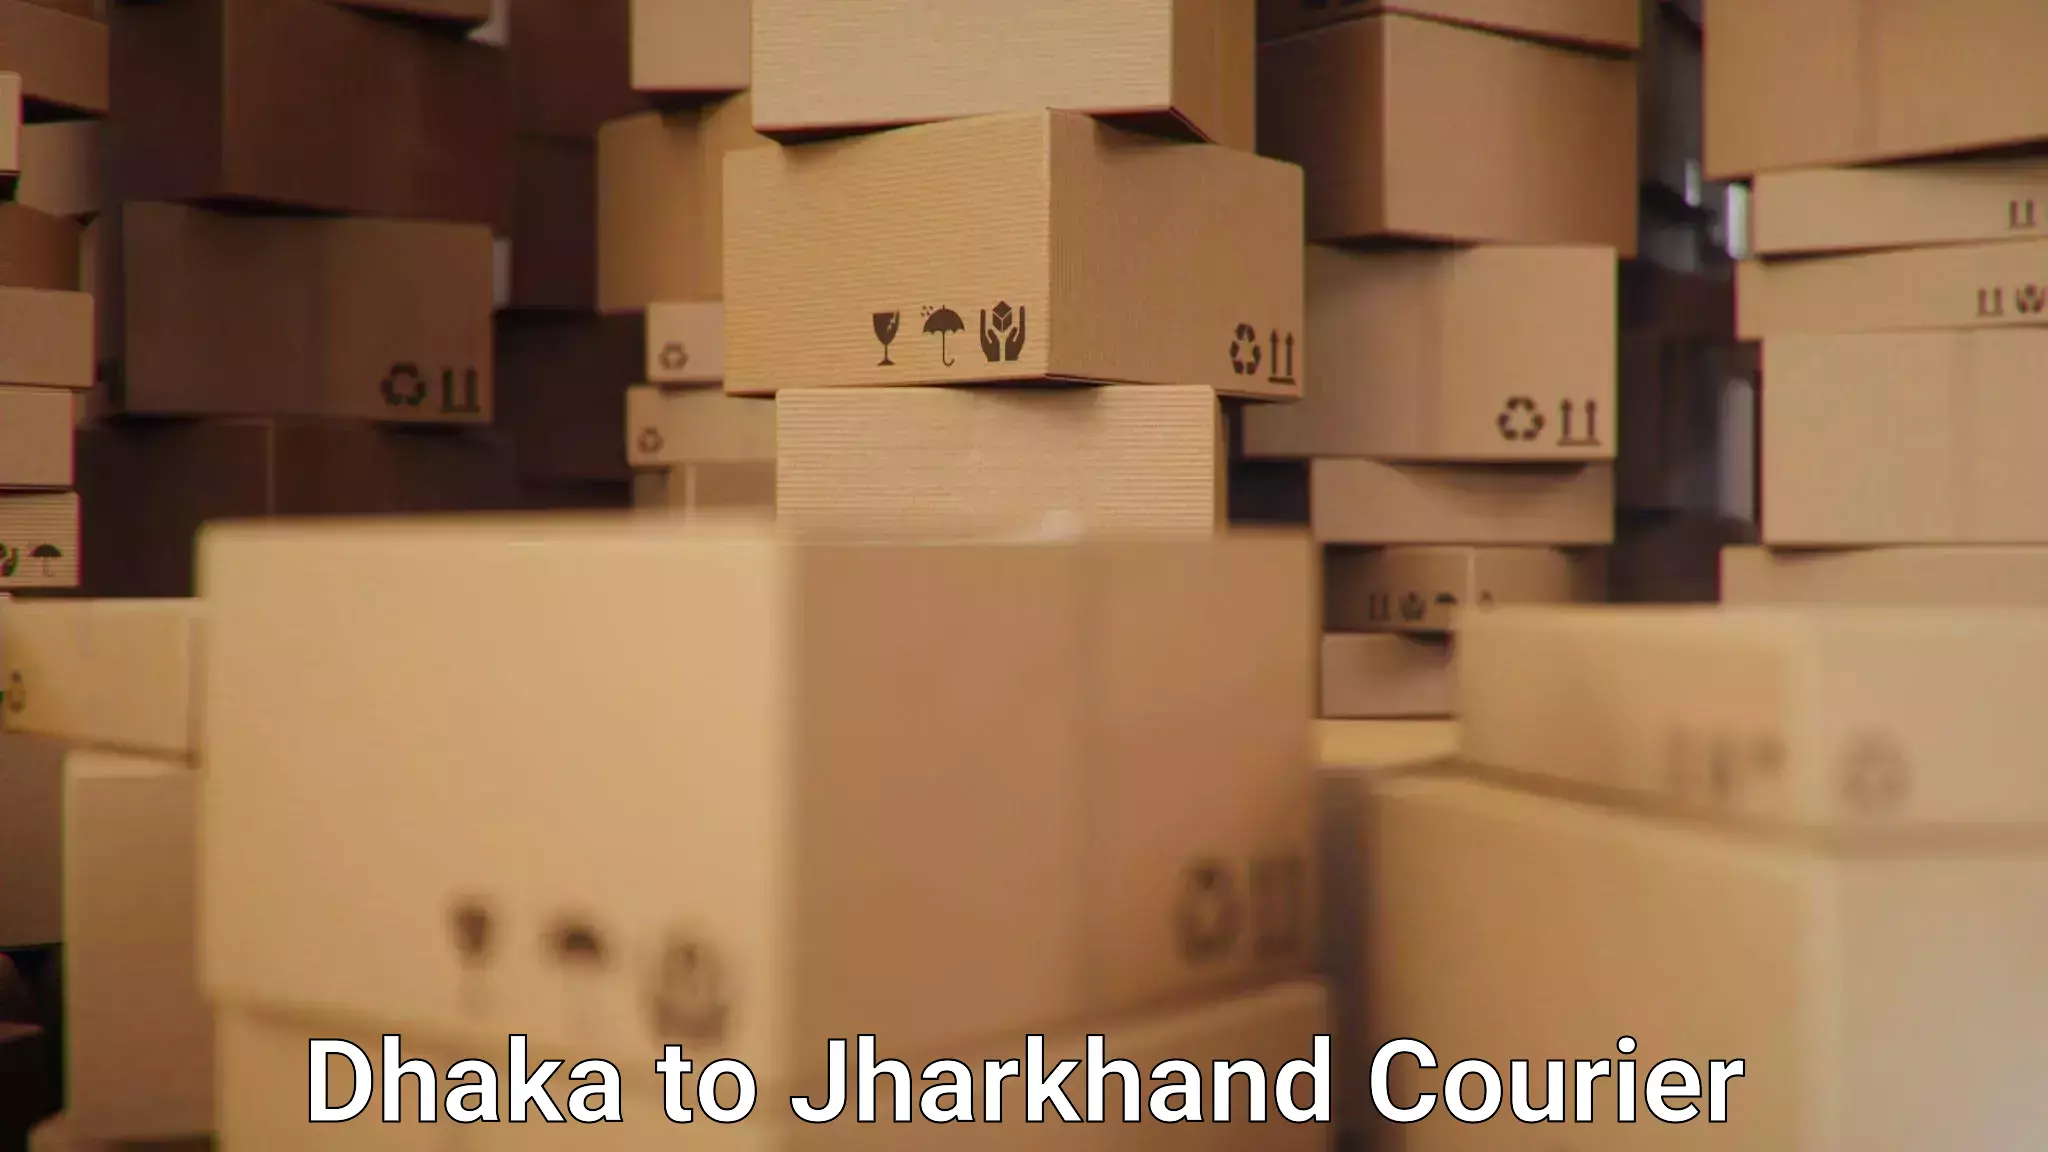 Shipping and handling Dhaka to Dhanbad